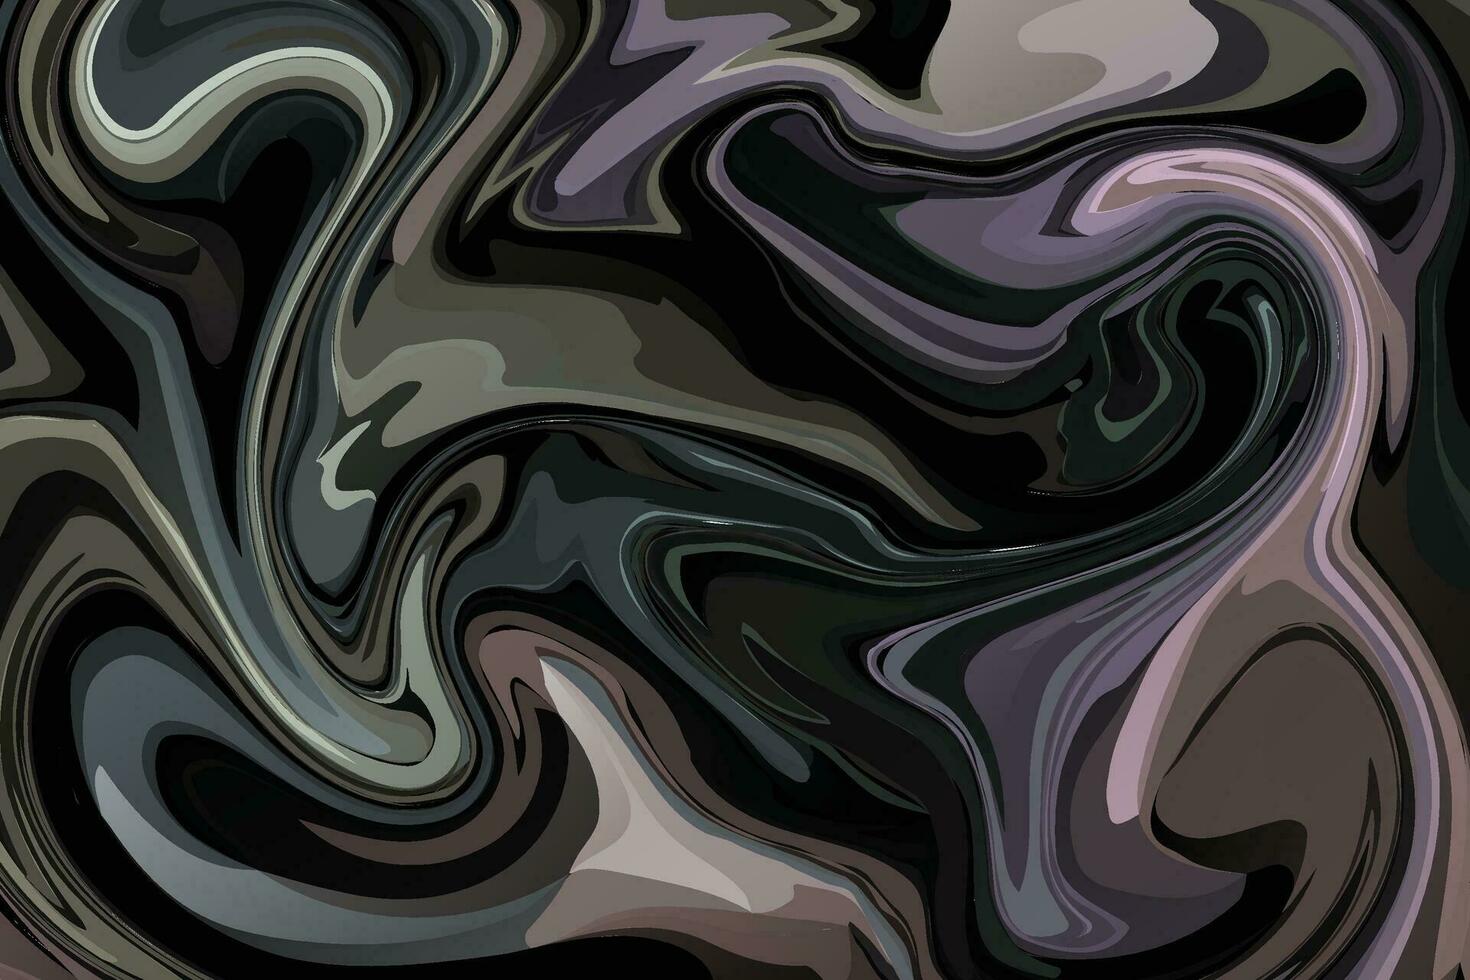 Flüssigkeit Marmor Textur Hintergrund und Luxus abstrakt Flüssigkeit Kunst. vektor